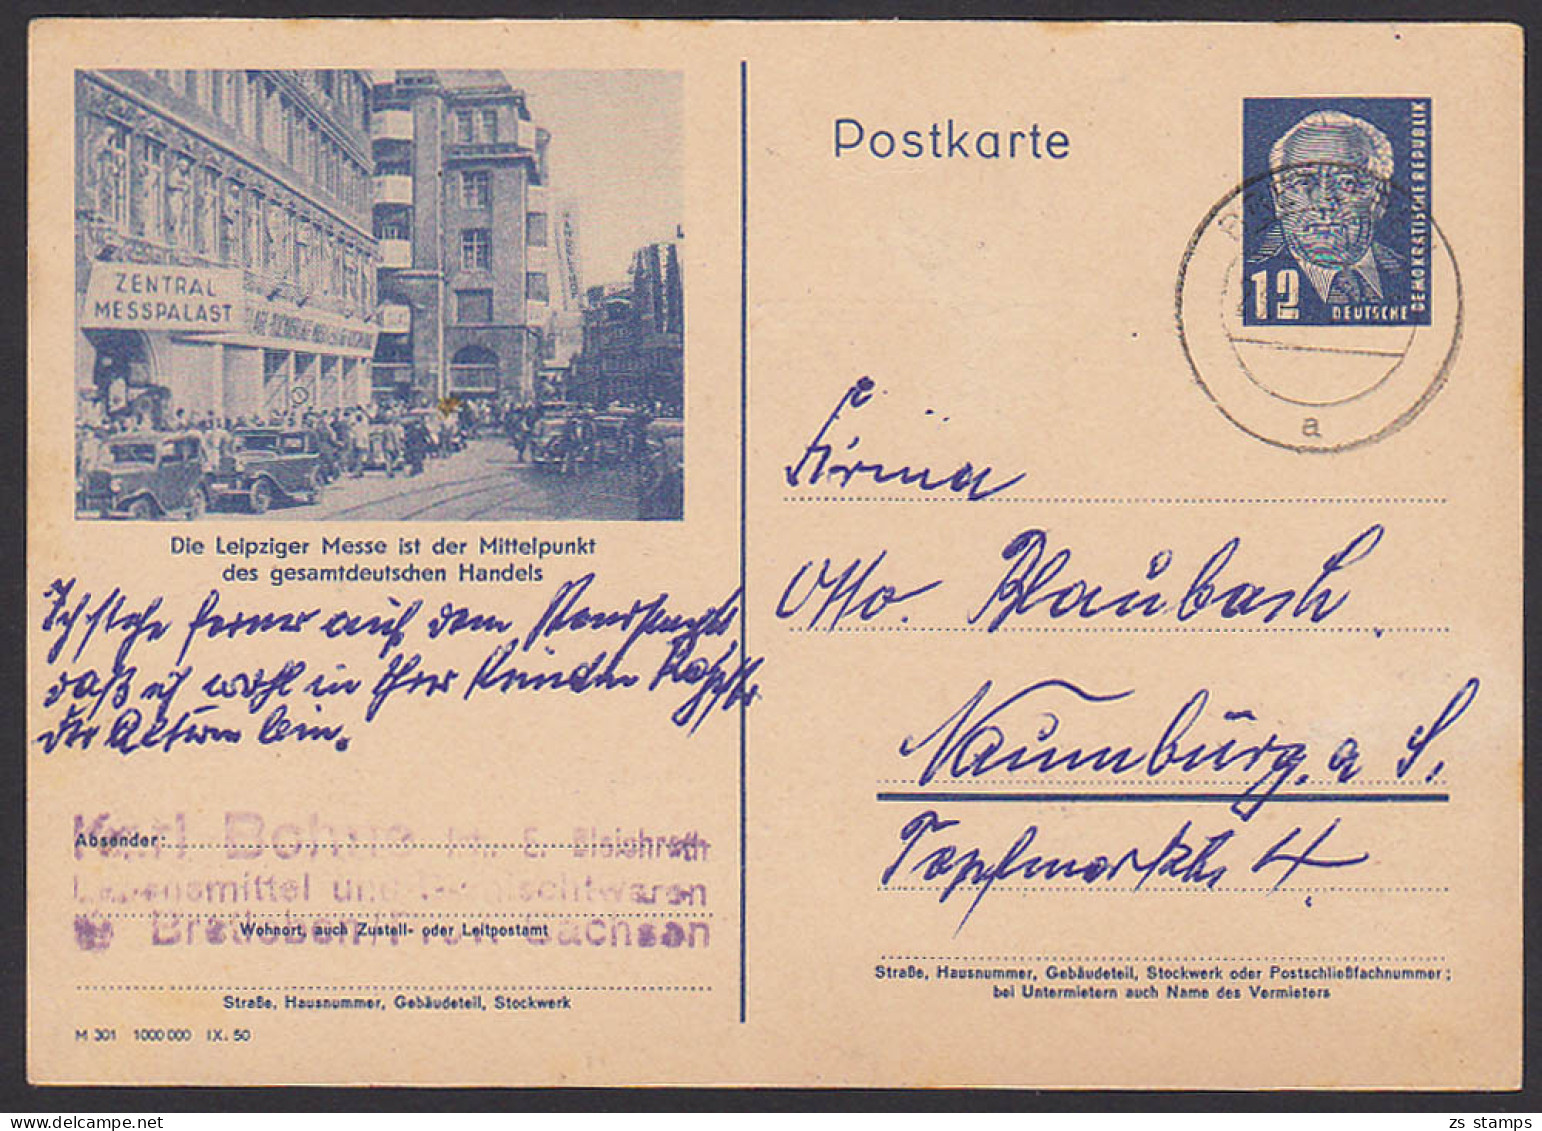 Leipzig Zentral Messepalast Bildpostkarte 12 Pfg. W. Pieck GA P47 /03, Mittelpunkt Es Gesamtdeutschen Handels - Postcards - Used